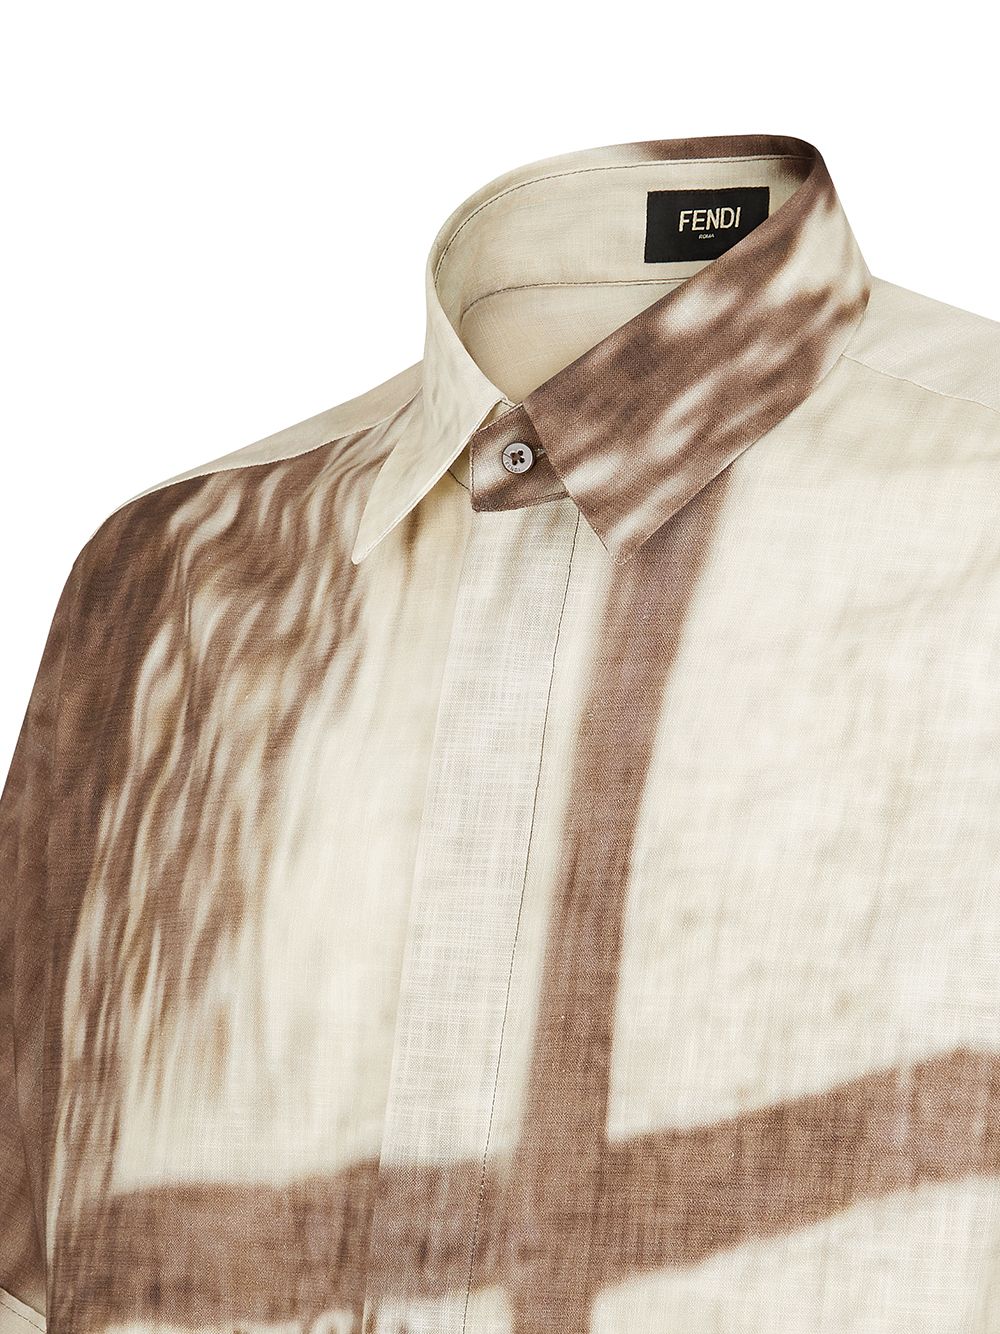 фото Fendi рубашка с принтом shady window